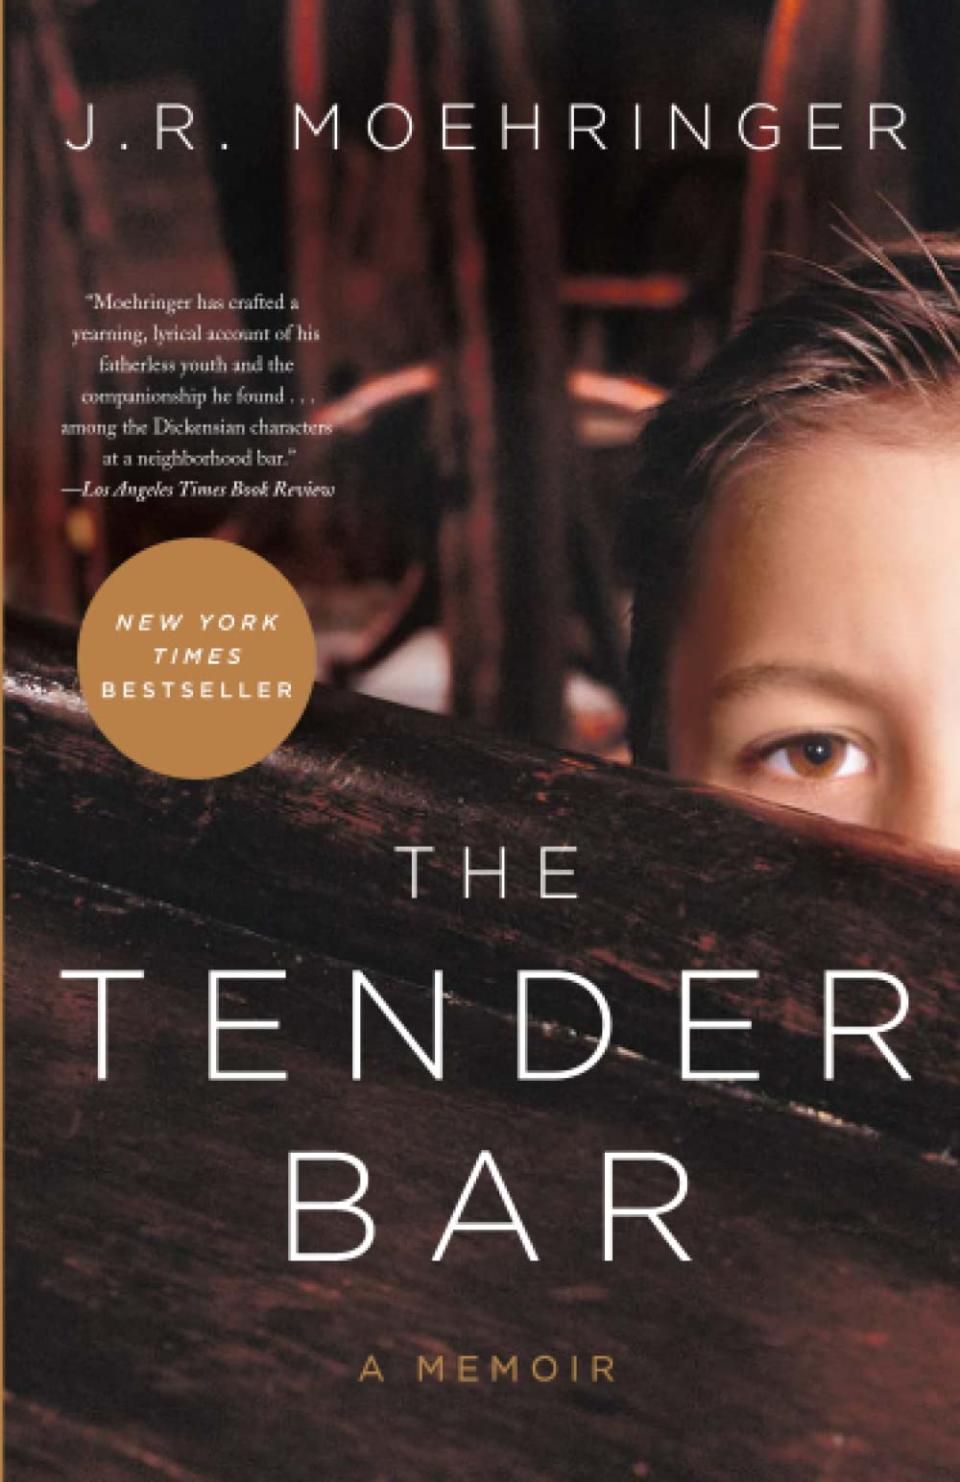 J.R. Moehringer’s 2006 bestselling memoir, “The Tender Bar